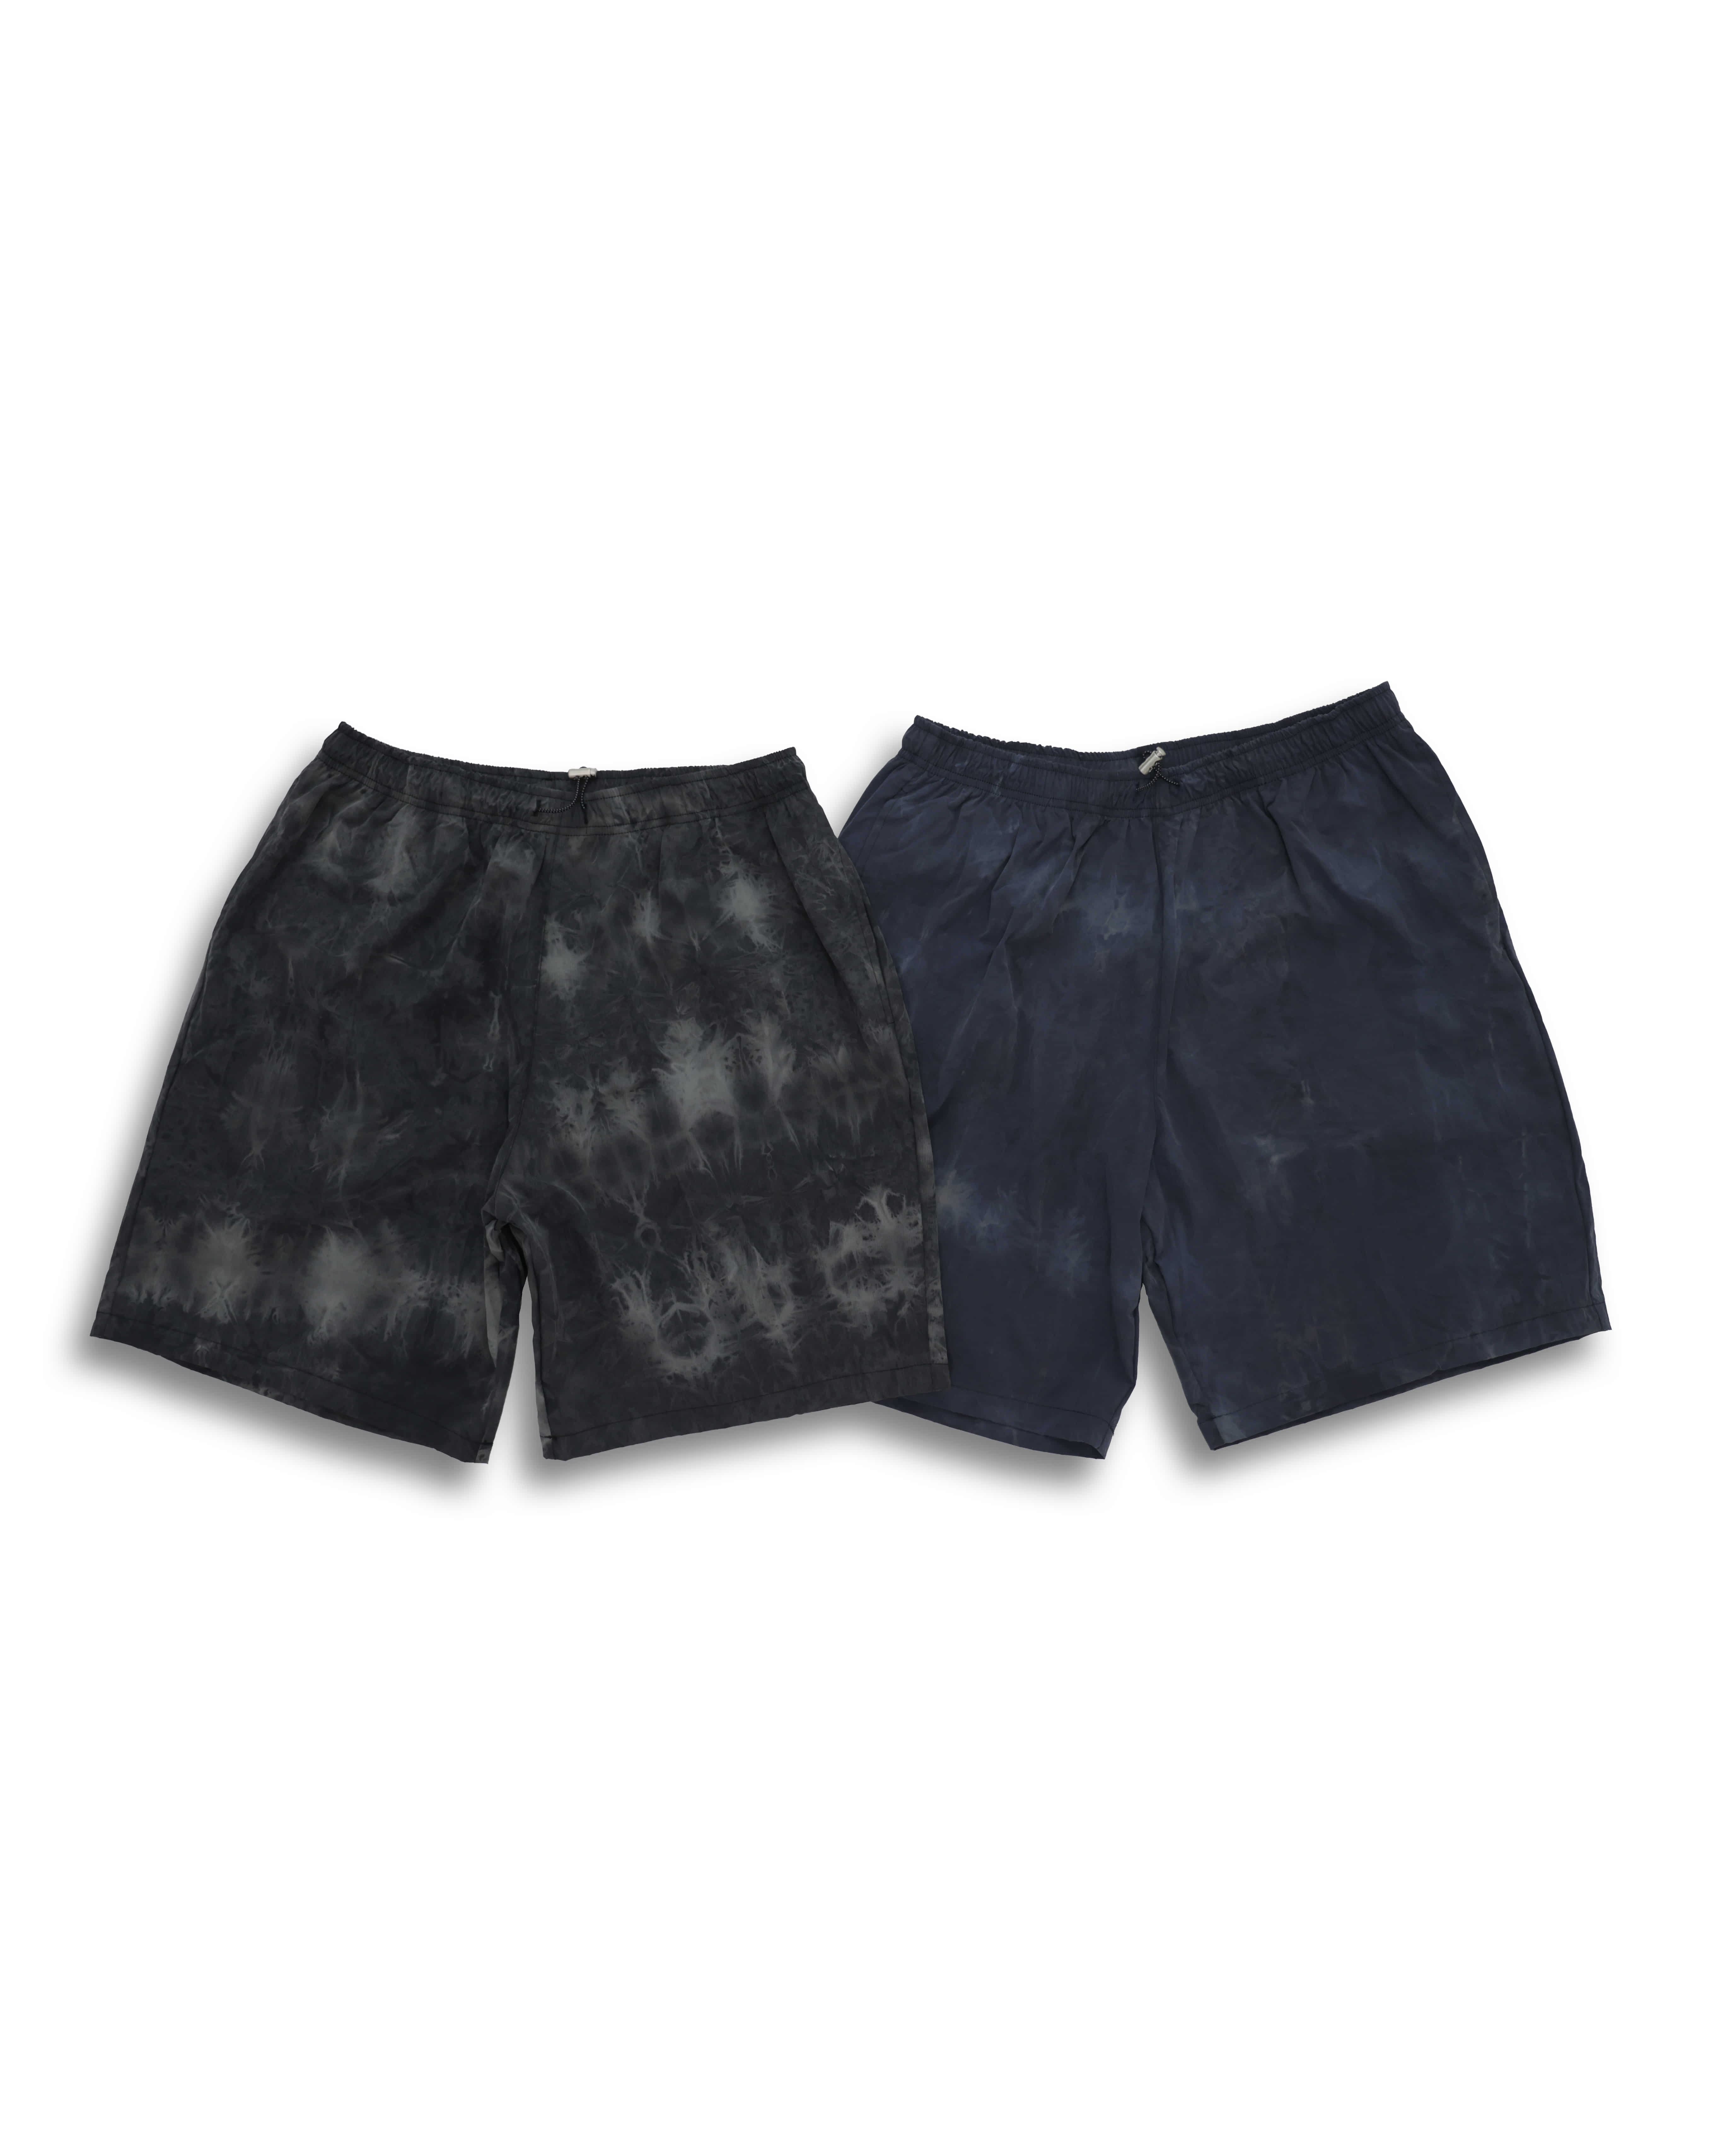 Tyedye Water Nylon Shorts (Black/Navy)